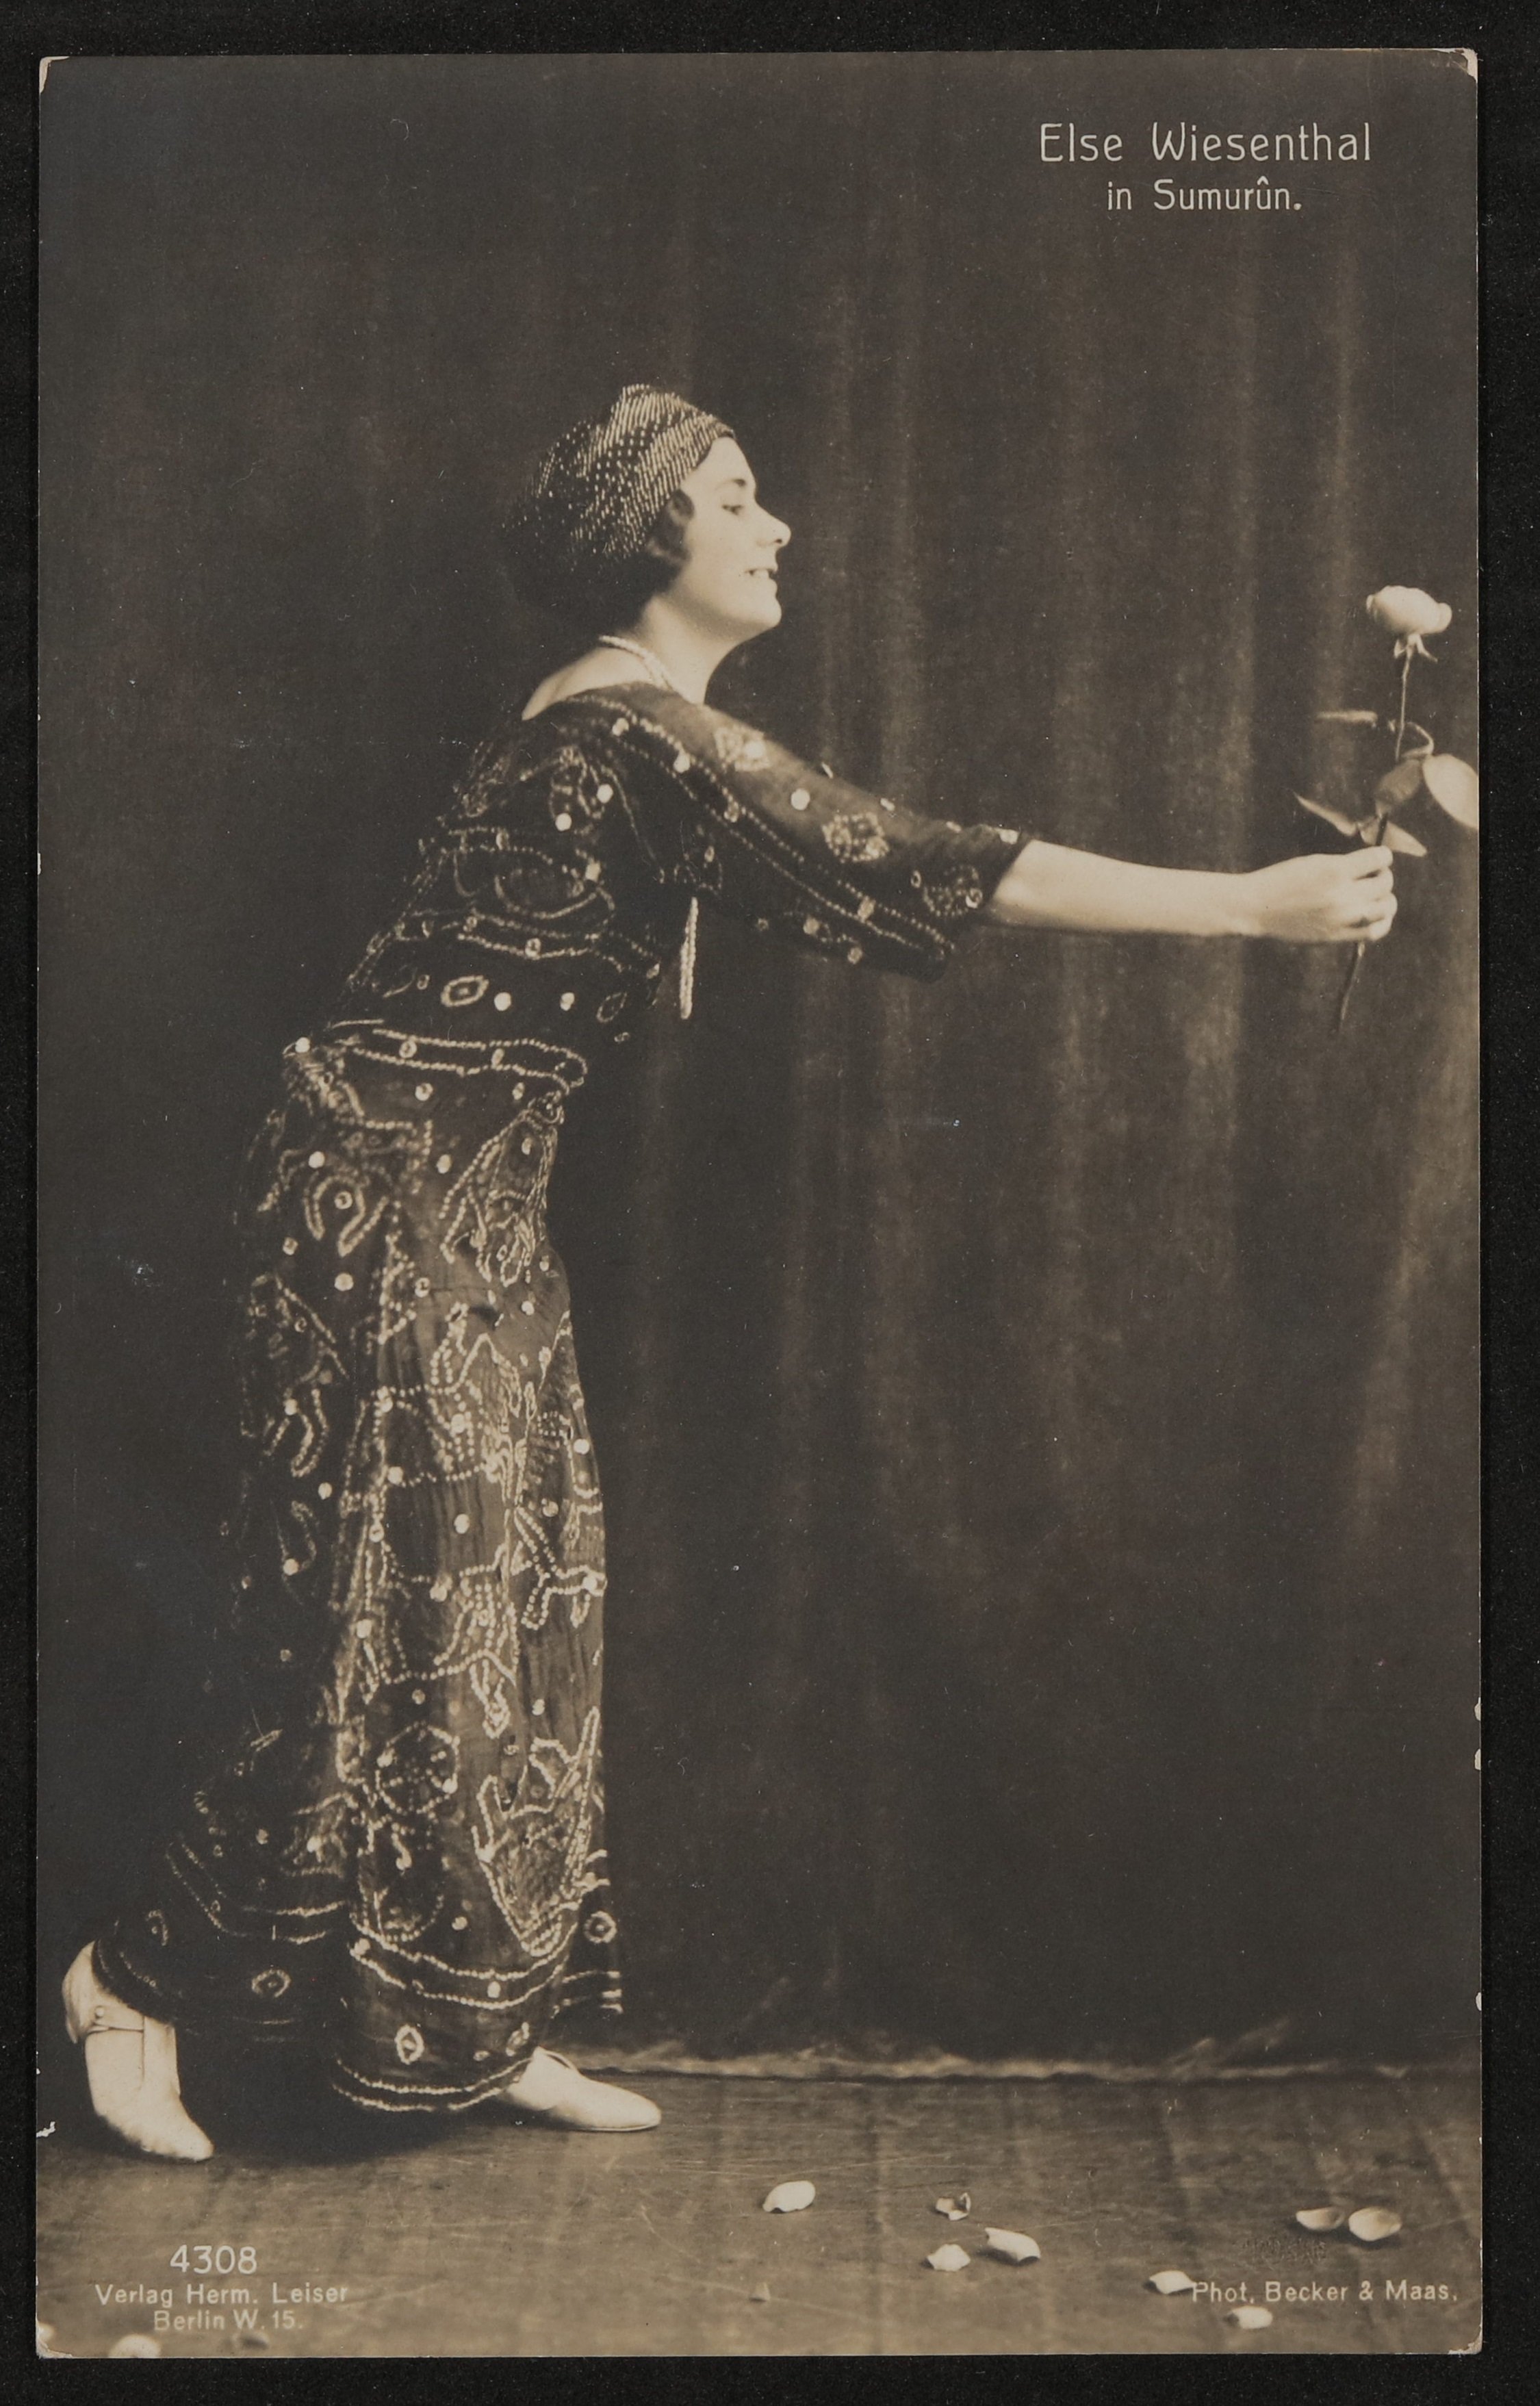 Elsa Wiesenthal in Sumurûn auf der Bühne mit einer Rose (Freies Deutsches Hochstift / Frankfurter Goethe-Museum CC BY-NC-SA)